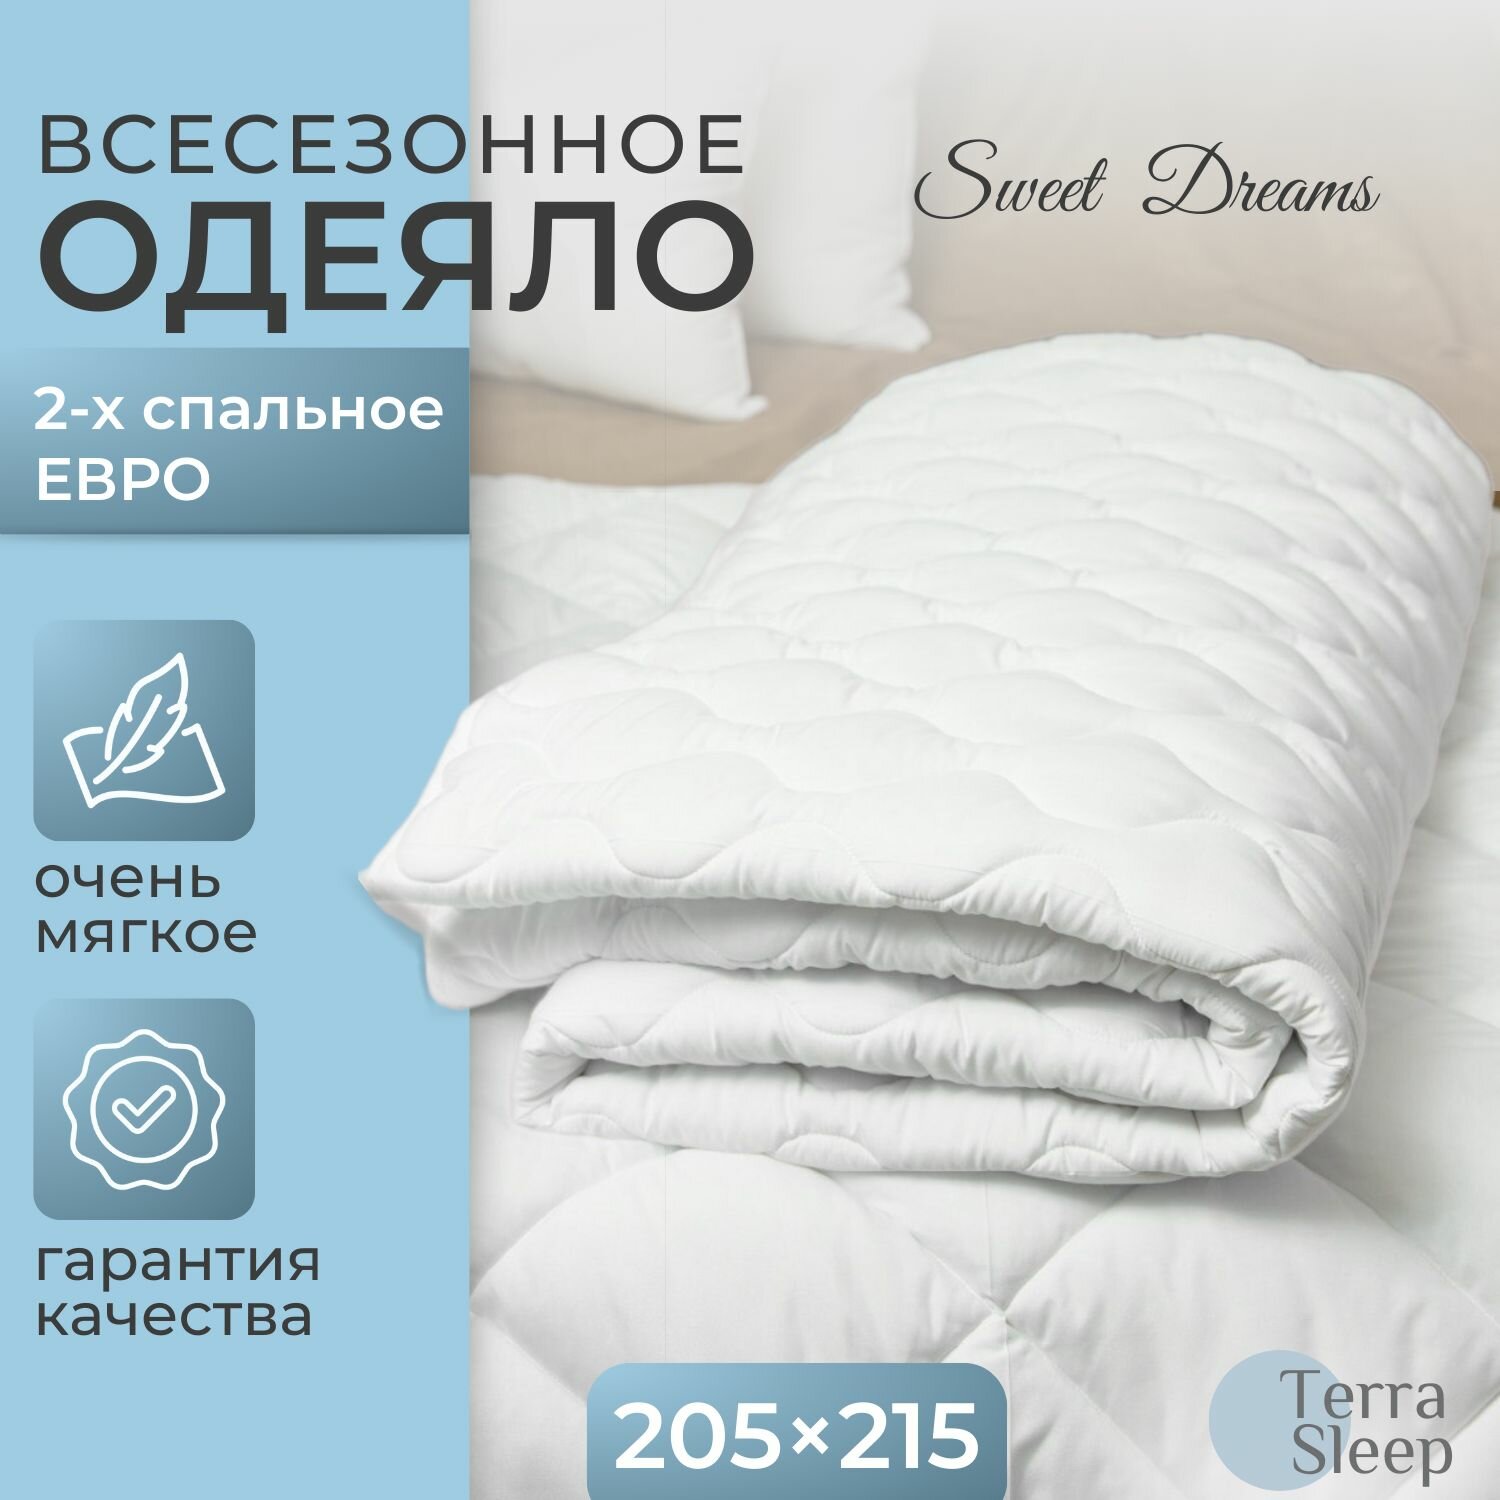 Одеяло Sweet Dreams, 2 спальное Евро 205х215 см, всесезонное, гипоаллергенный наполнитель Ютфайбер, декоративная стежка малая волна, 200 г/м2